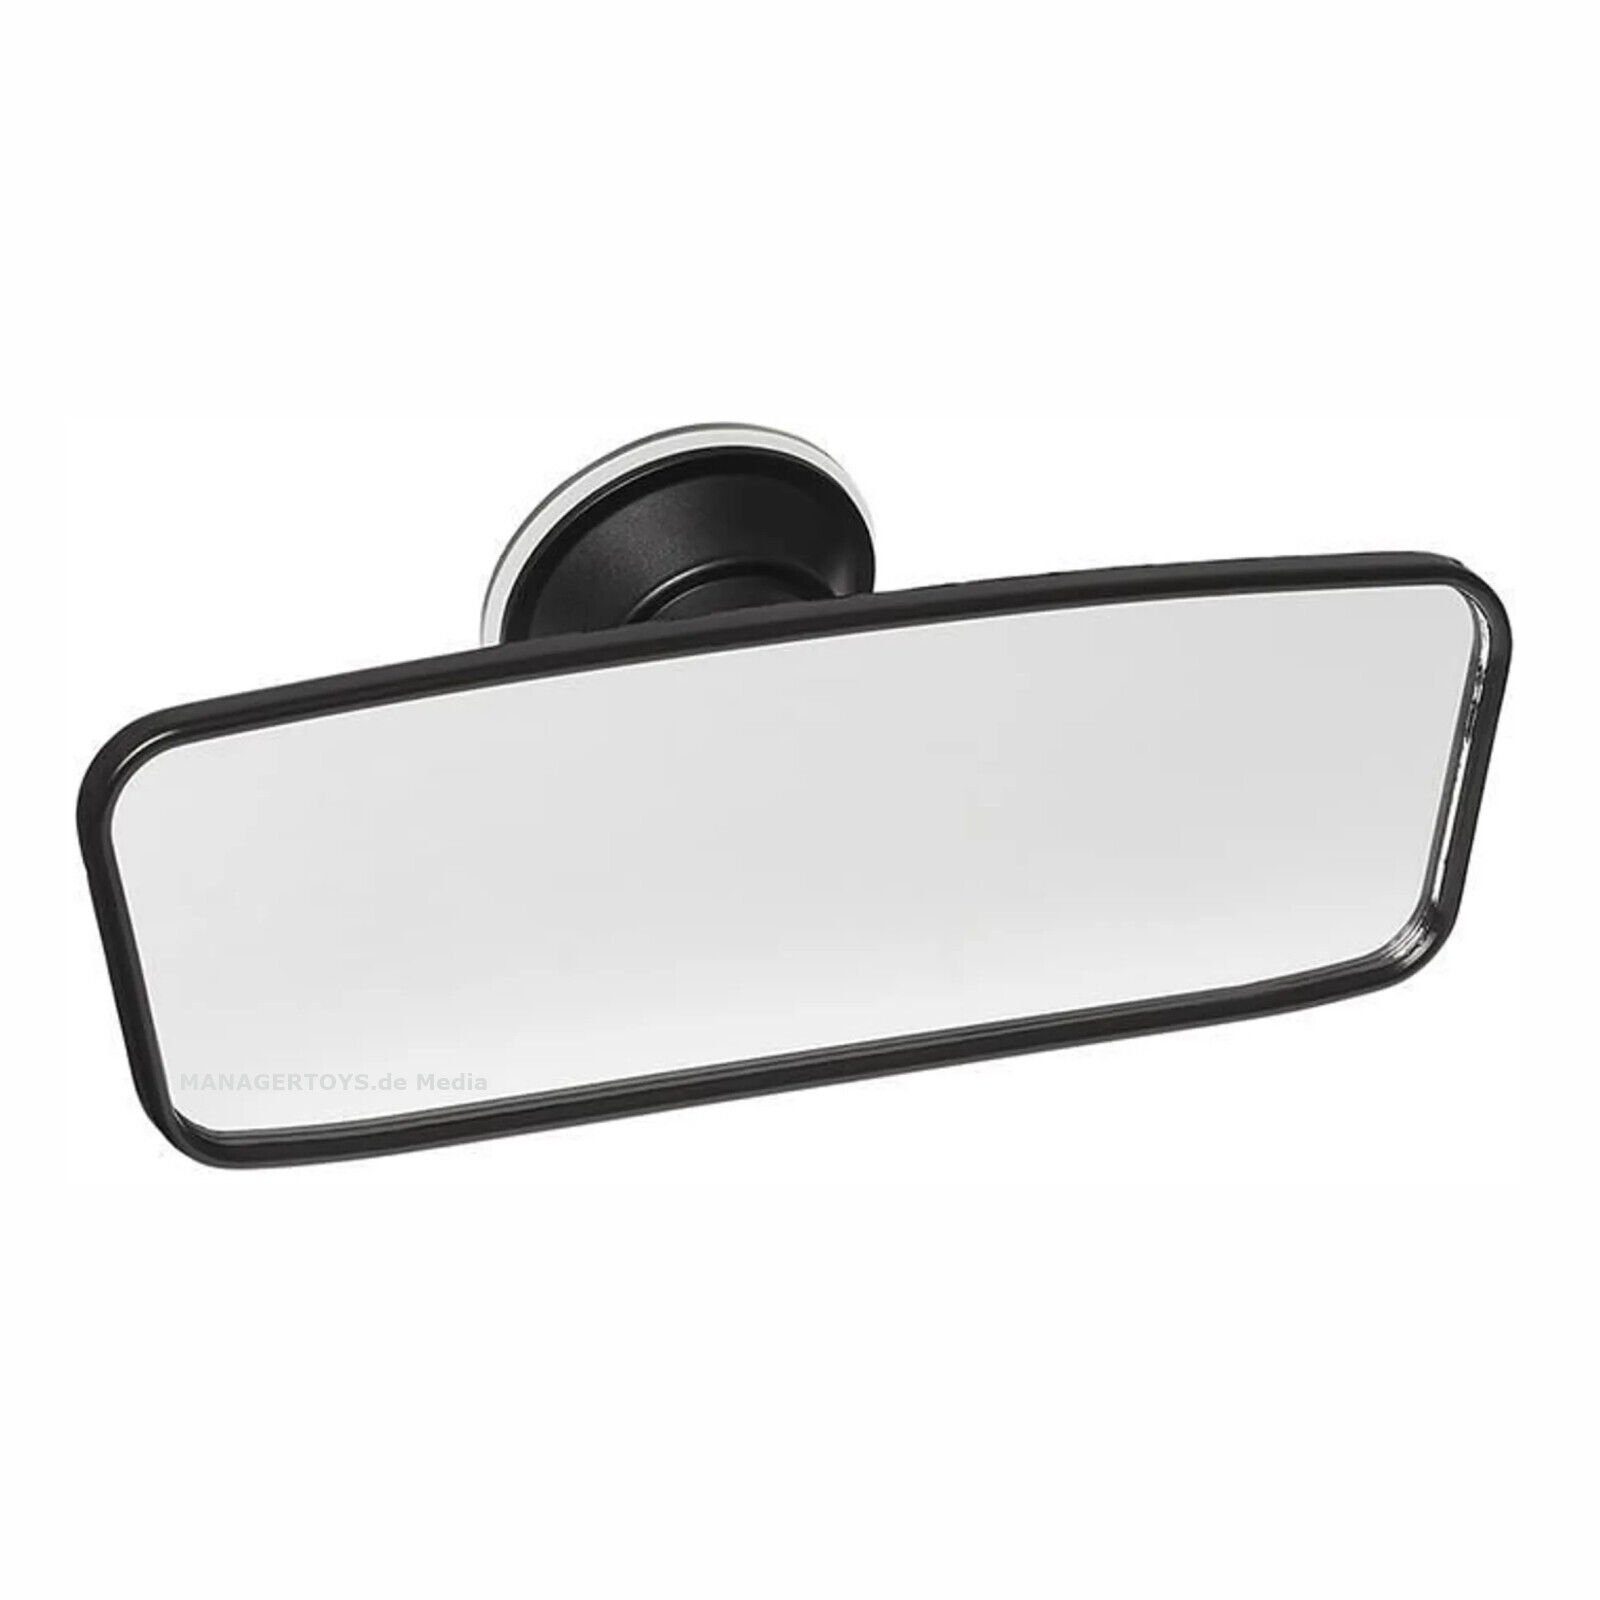 CarStyling Spiegel Rückspiegel Saugnapf 18 x 6 cm ohne Verzerrung echtes Glas Zusatz